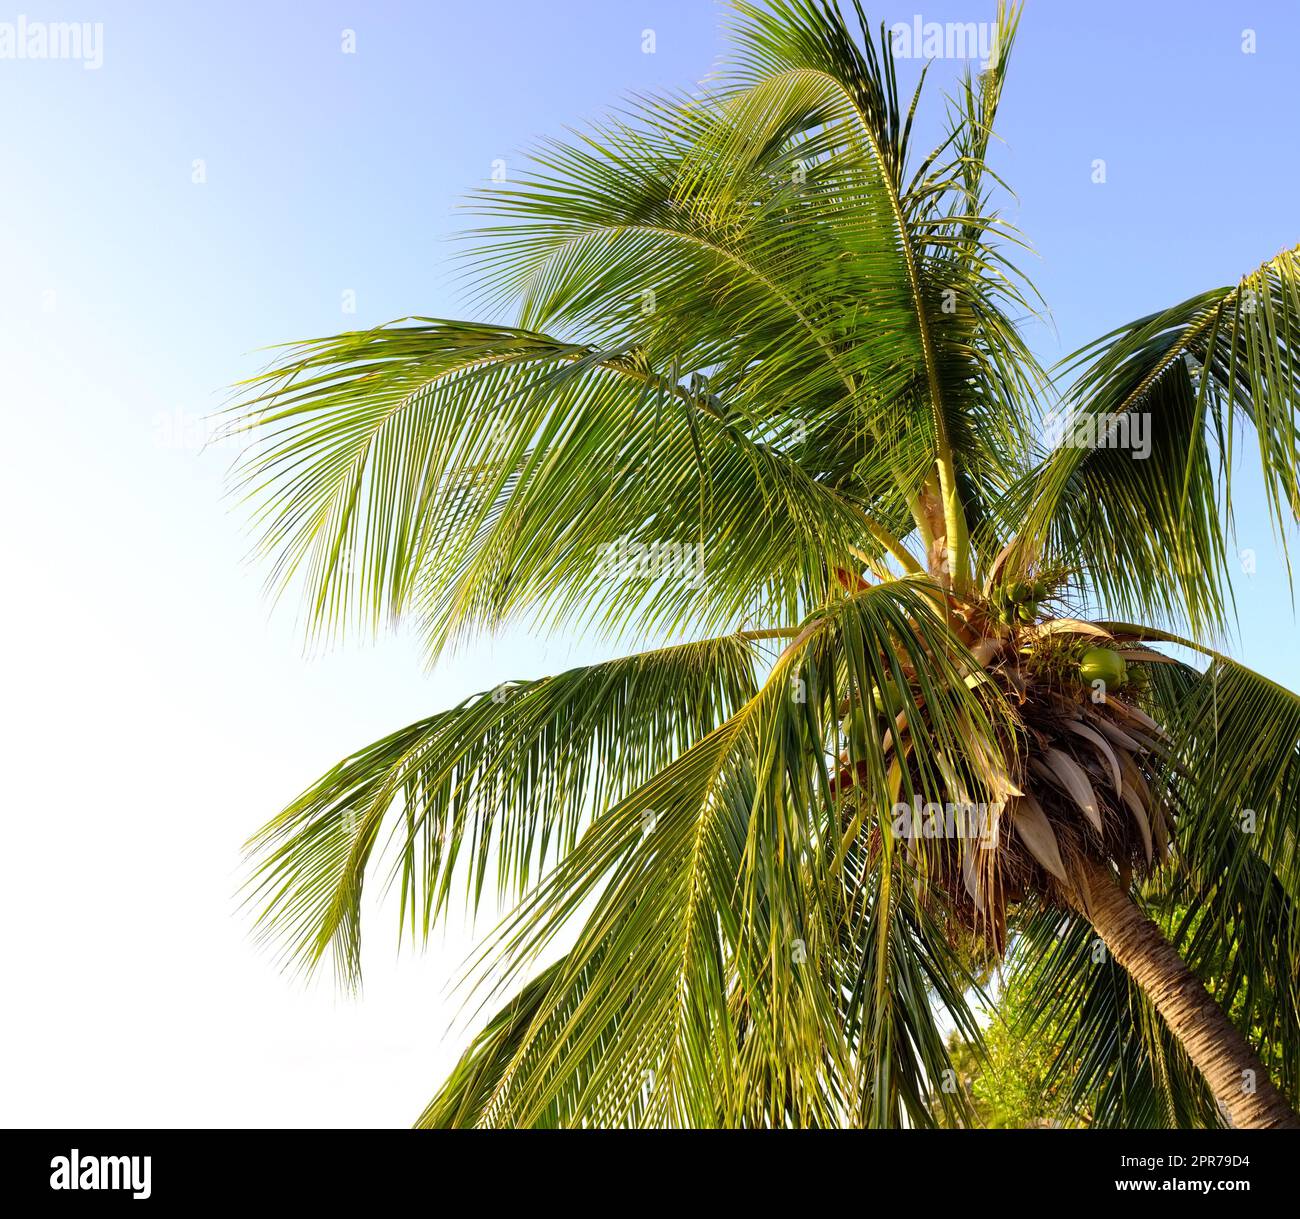 Un palmier contre un ciel bleu vif. Un cococotier avec des feuilles qui brillent sous le soleil par le dessous. Une île exotique relaxante, une escapade paradisiaque à l'étranger ou une destination touristique tropicale Banque D'Images